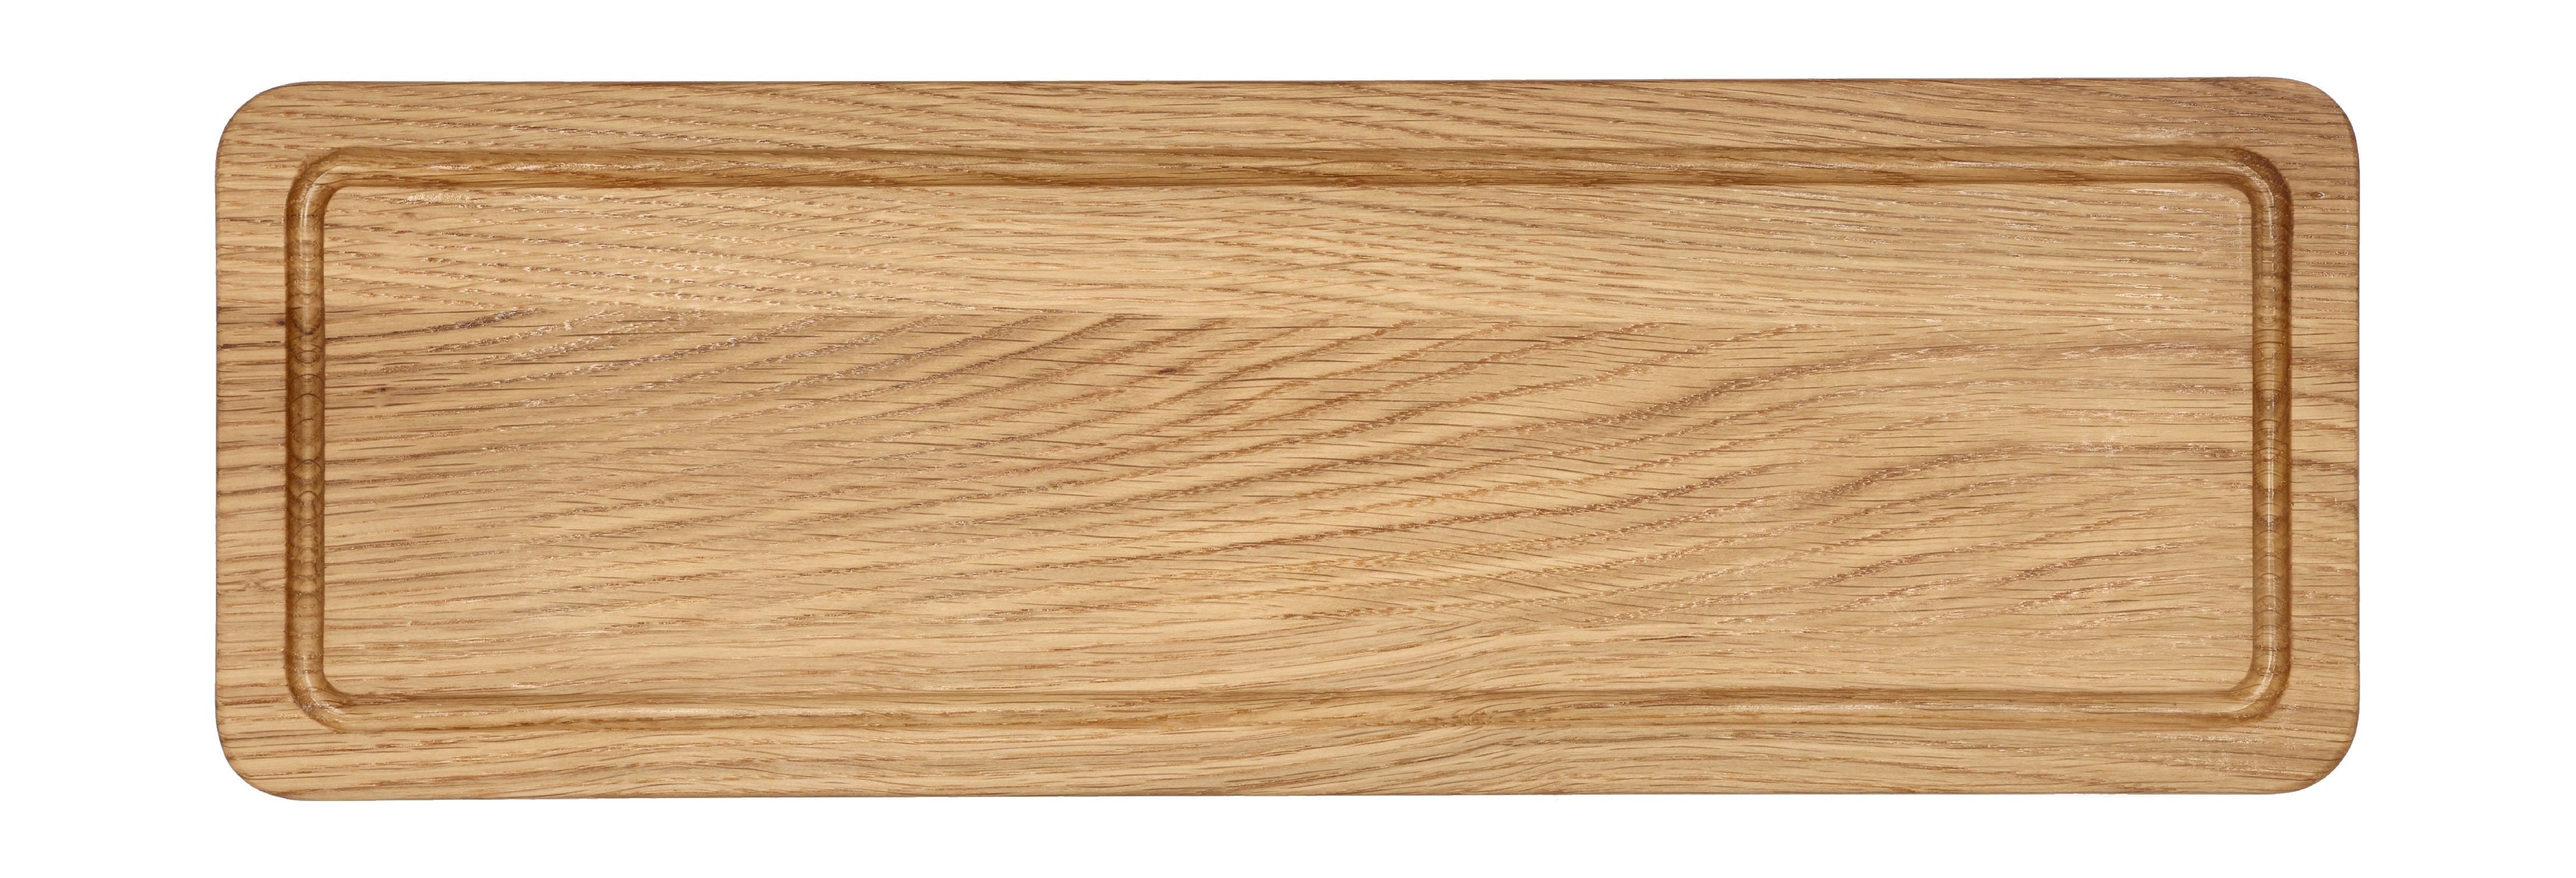 Morsø skovskærebord, 50x17x1,5 cm